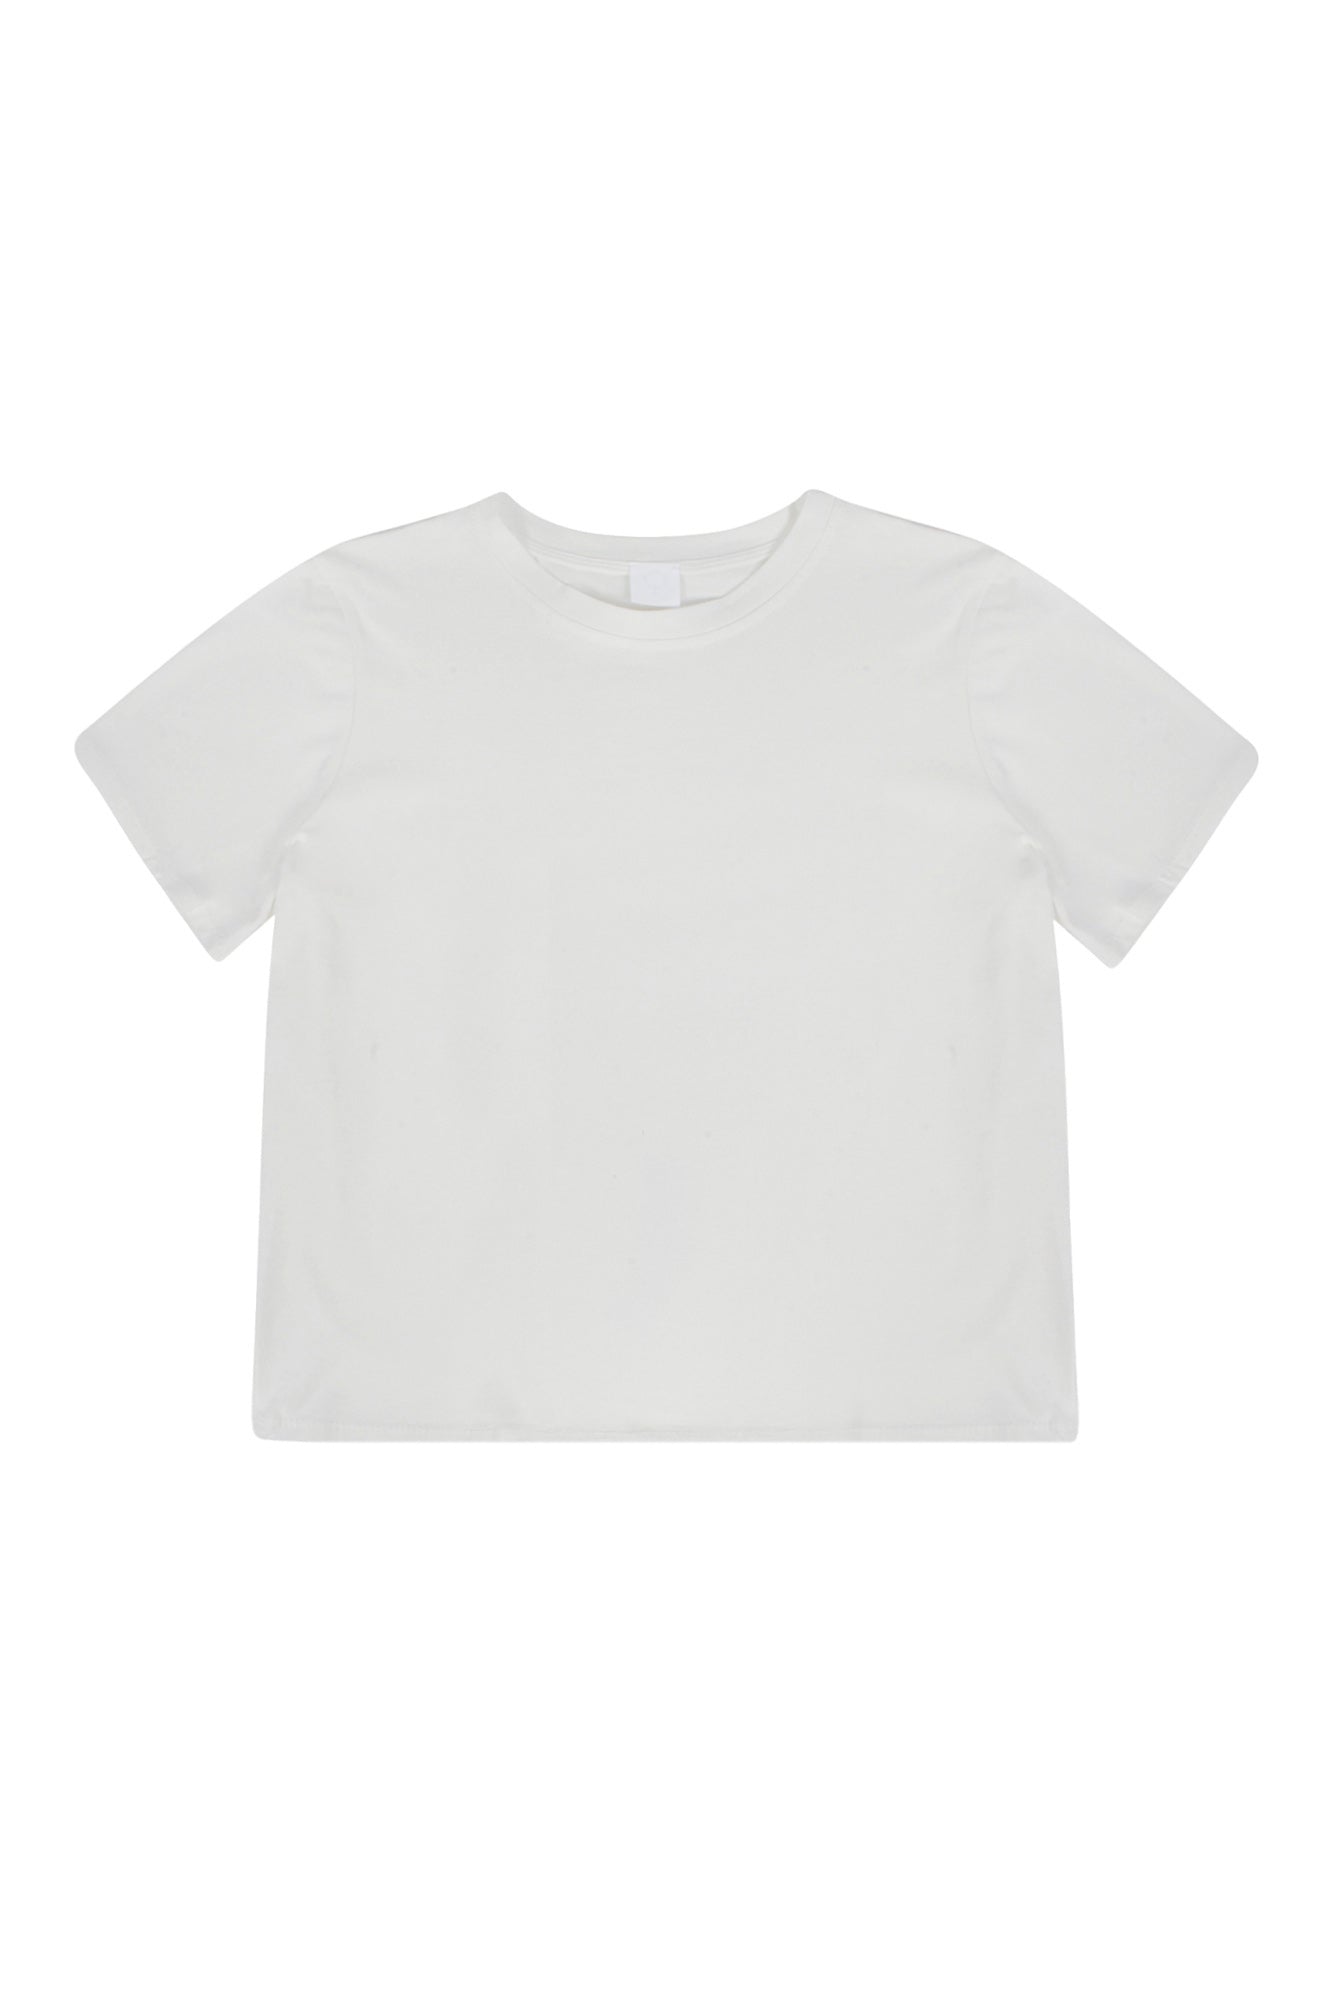 La Femme Blanche - T-shirt - 431584 - Panna